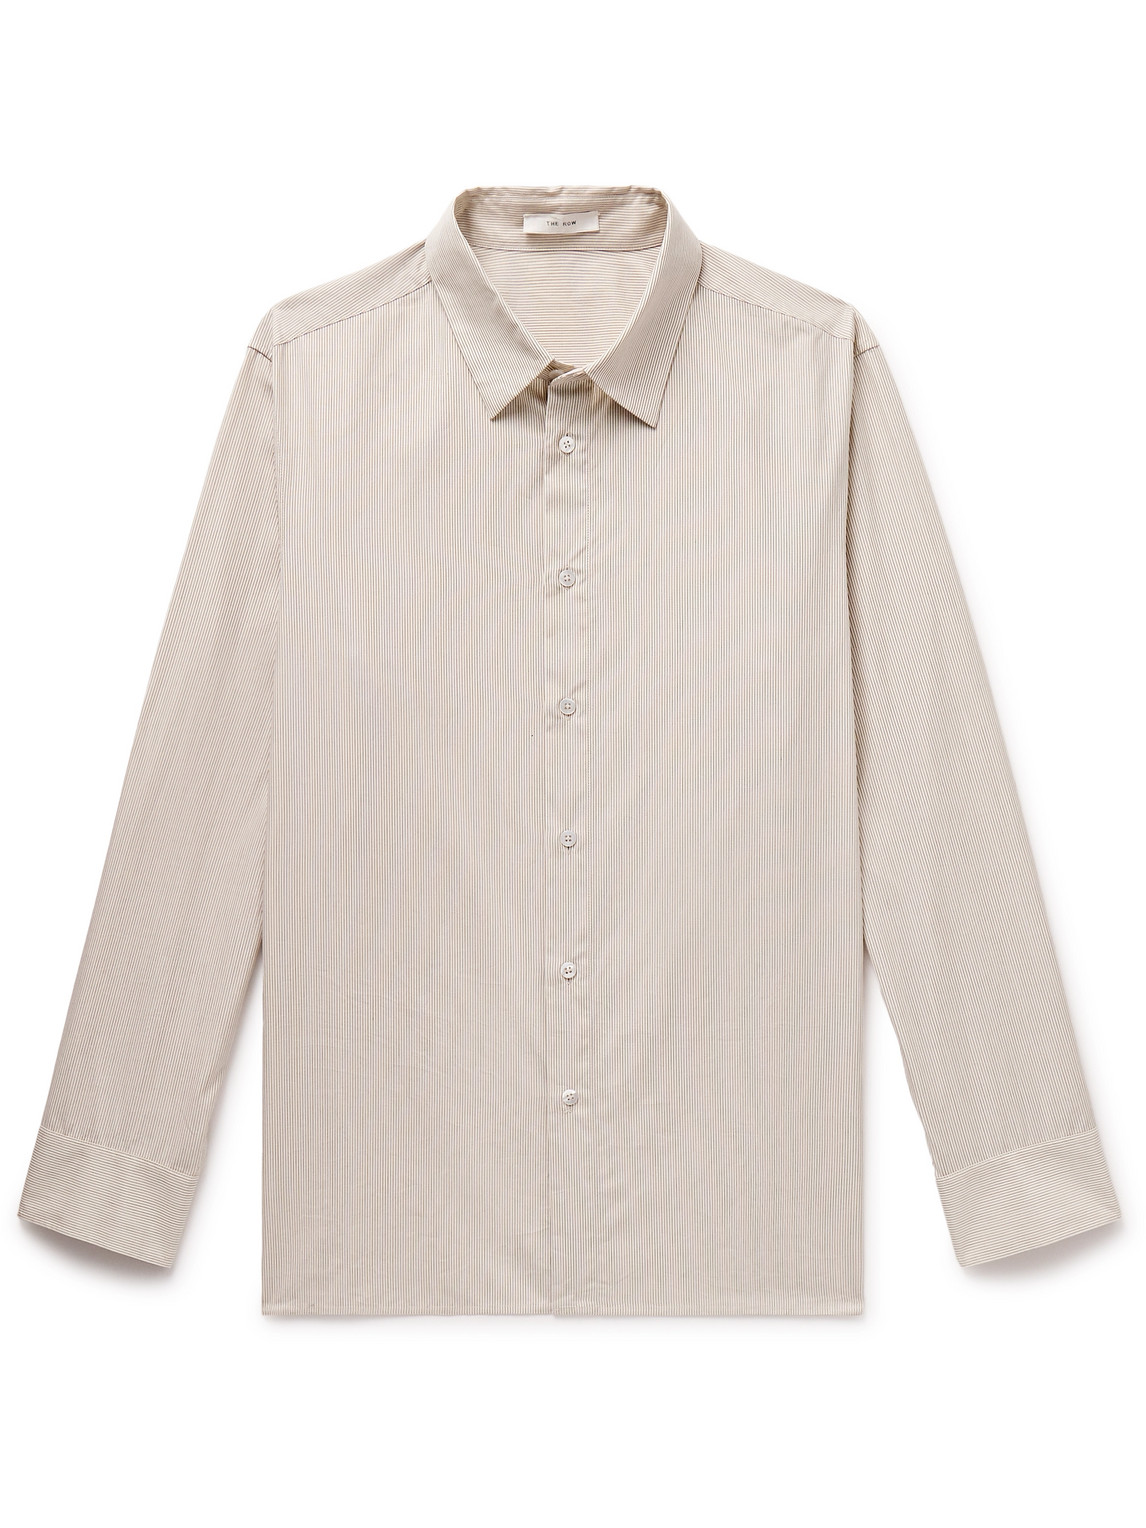 The Row - Julio Striped Cotton-Poplin Shirt - Men - Neutrals - XL von The Row